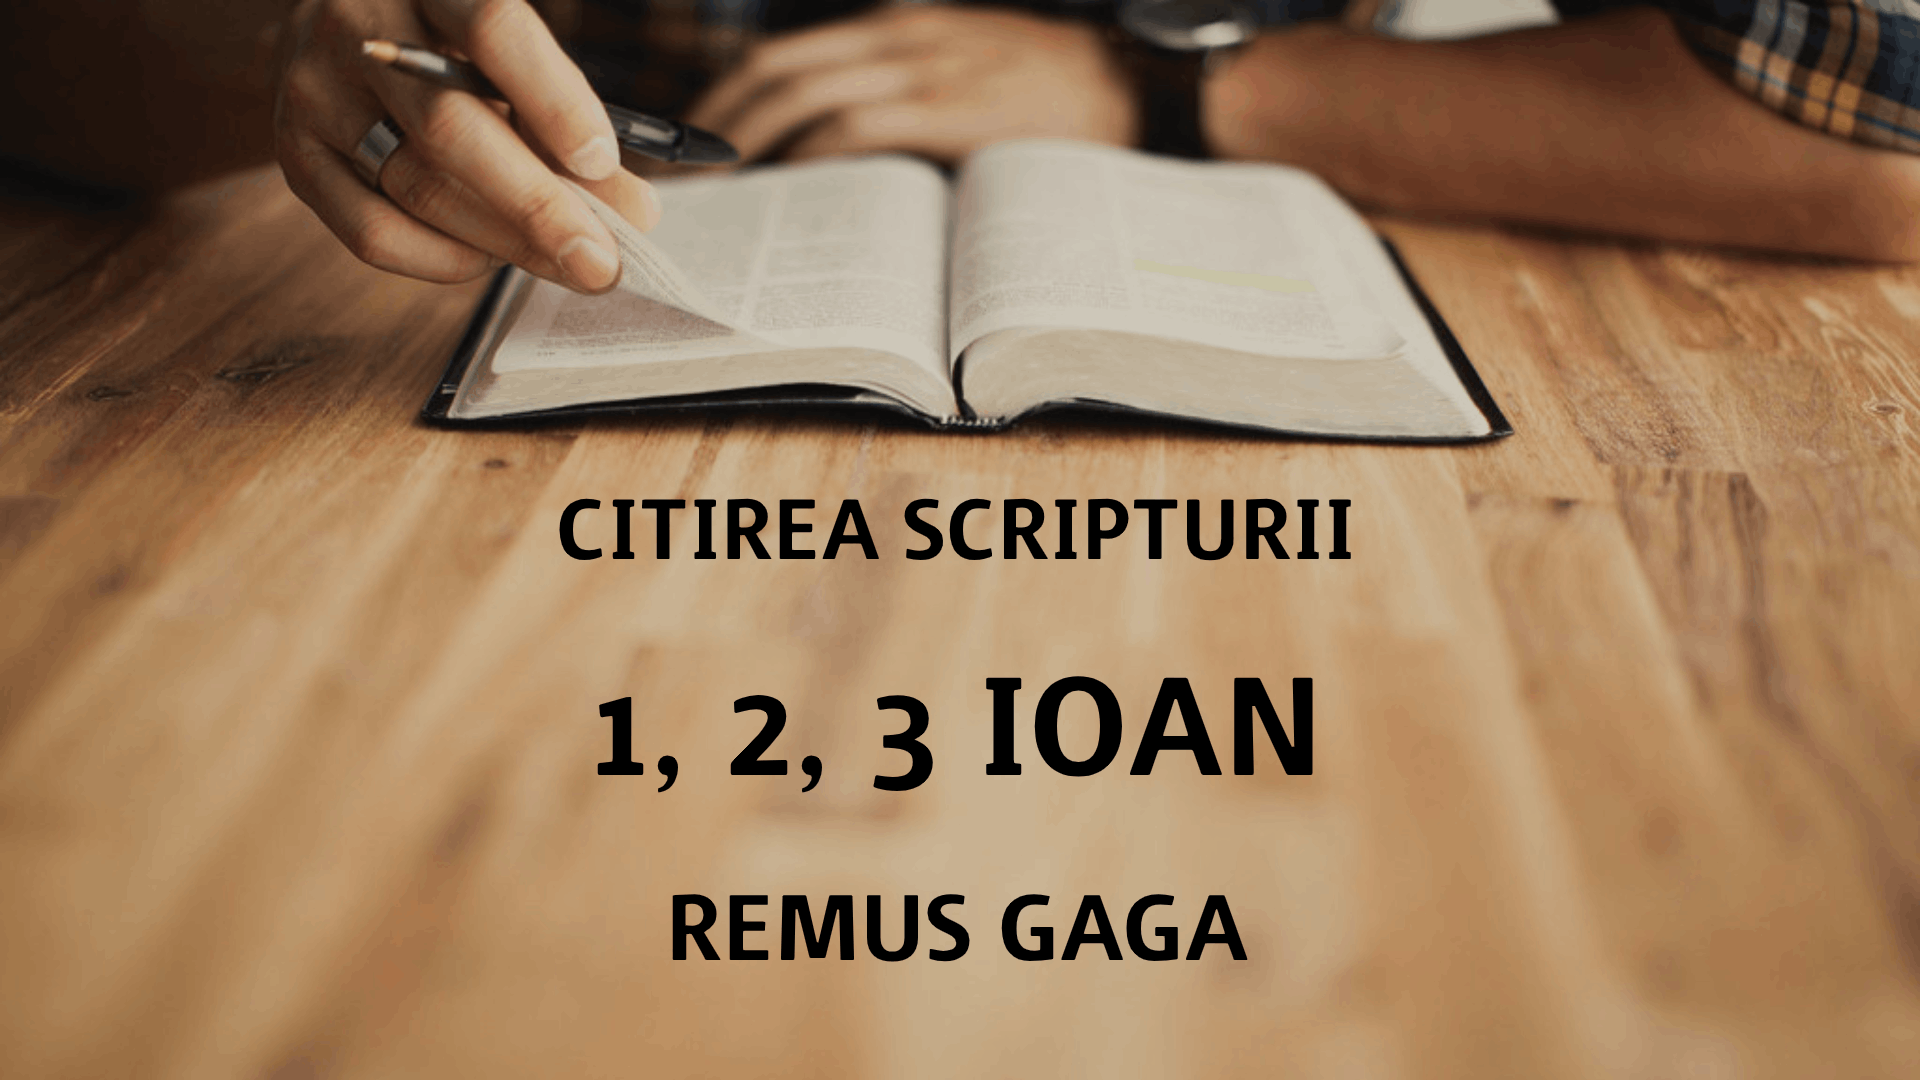 Citirea Scripturii - 1-2-3 IOAN - Remus Gaga